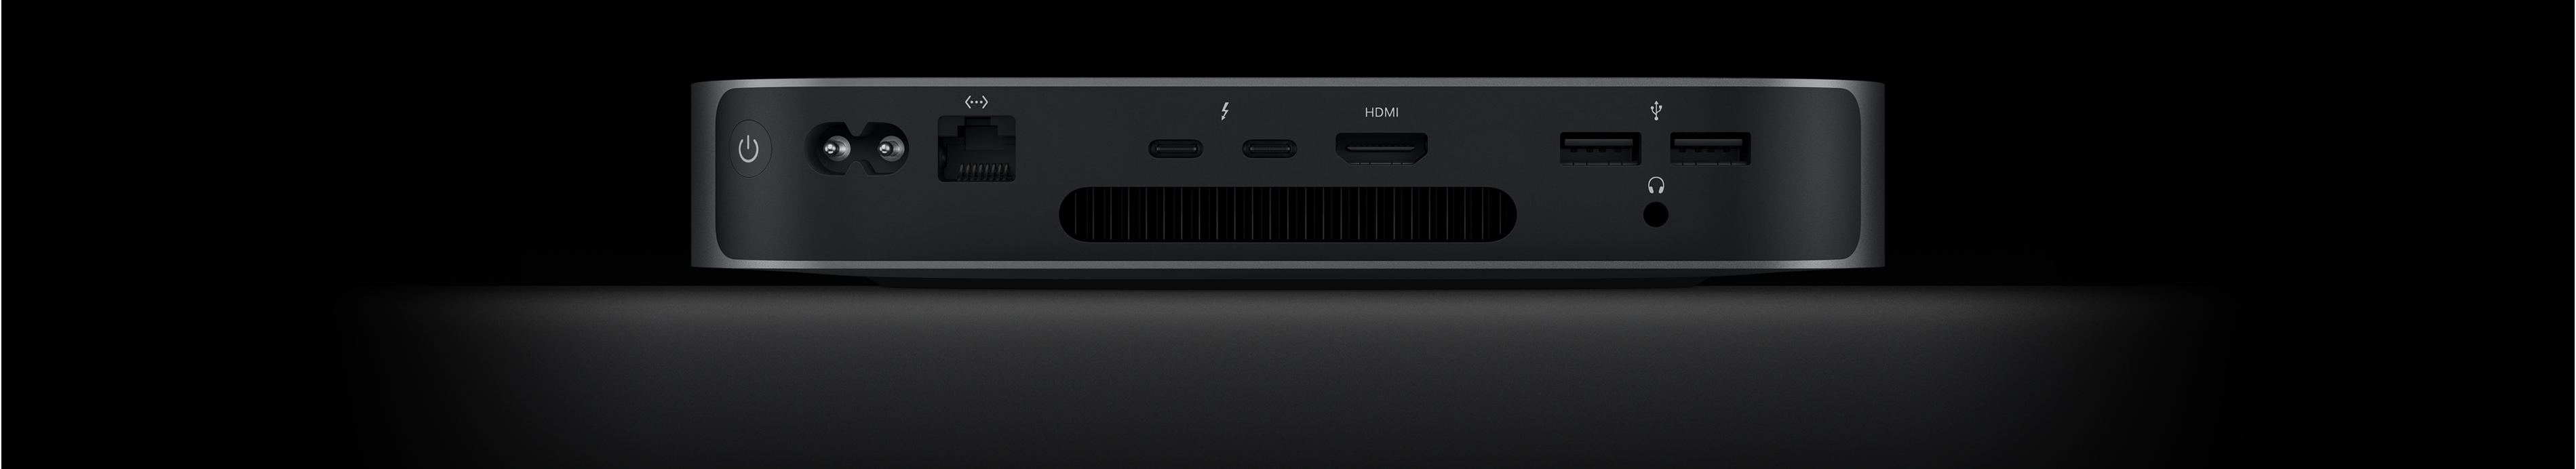 Mac mini’nin iki adet Thunderbolt 4 bağlantı noktasını, HDMI bağlantı noktasını, iki adet USB-A bağlantı noktasını, kulaklık jakını, Gigabit Ethernet bağlantı noktasını, güç bağlantı noktasını ve güç düğmesini gösteren arkadan görünümü.